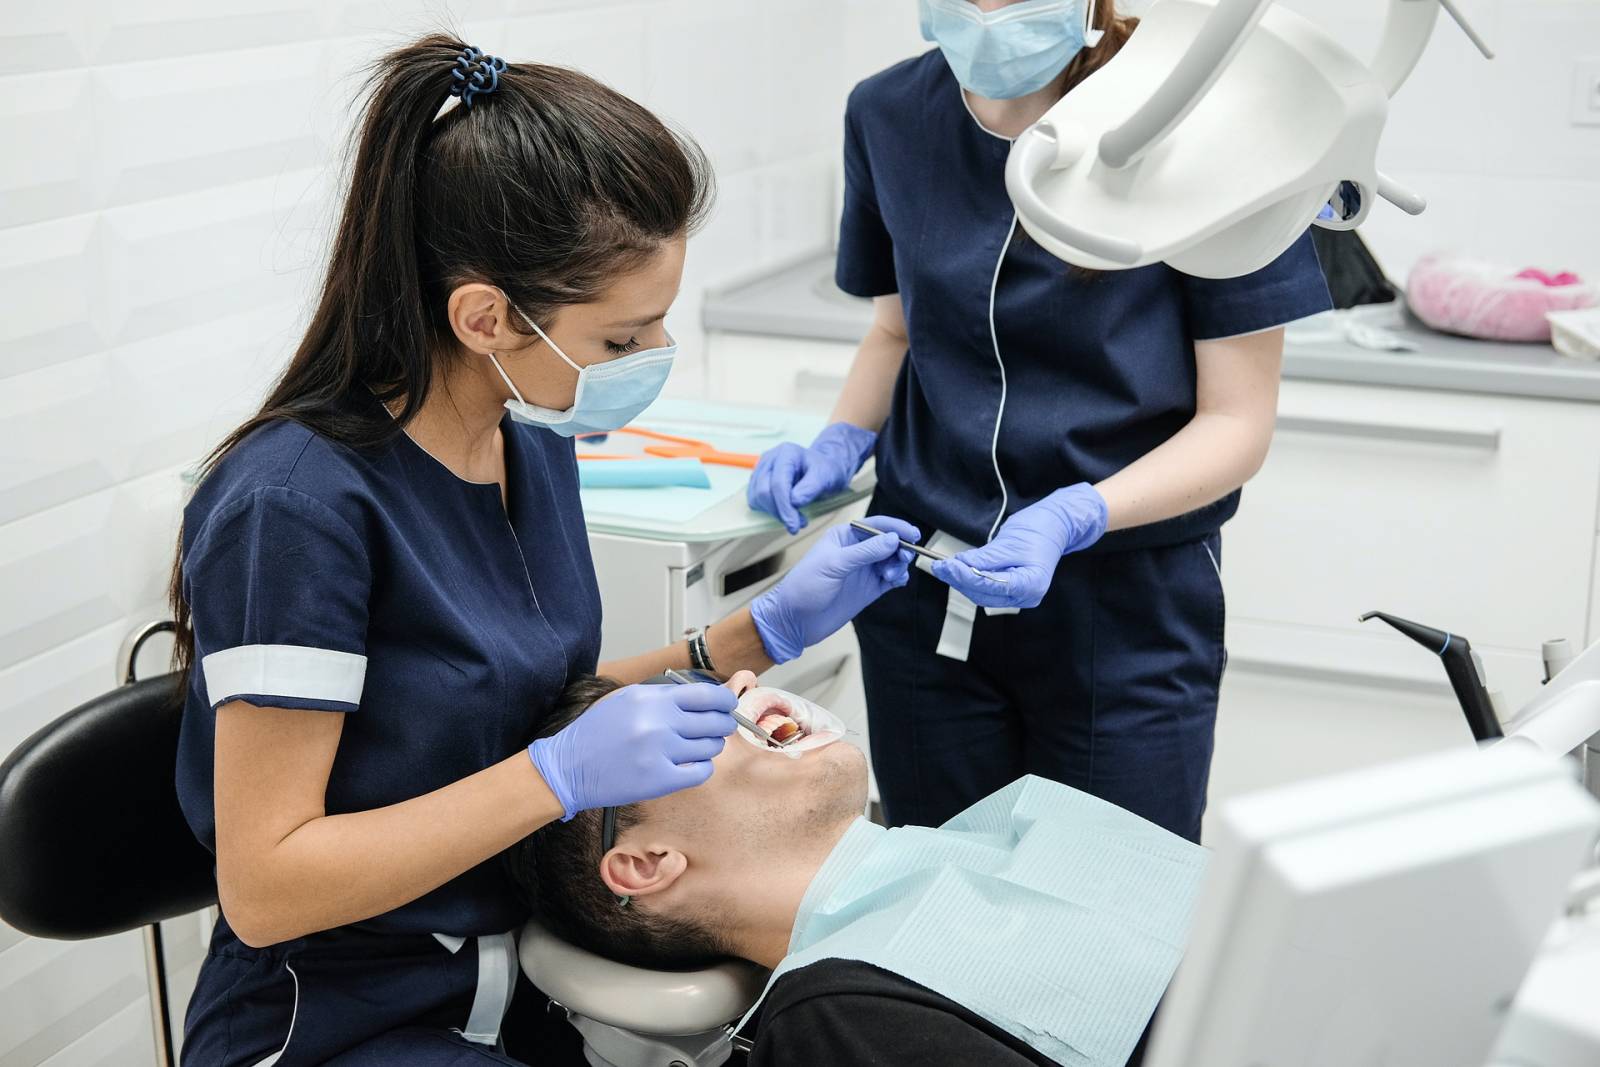 Hammashoitaja/lääkäri tutkii potilaan suuta, samalla kuin toinen hammashoitaja/lääkäri ojentaa hänelle työkalua.